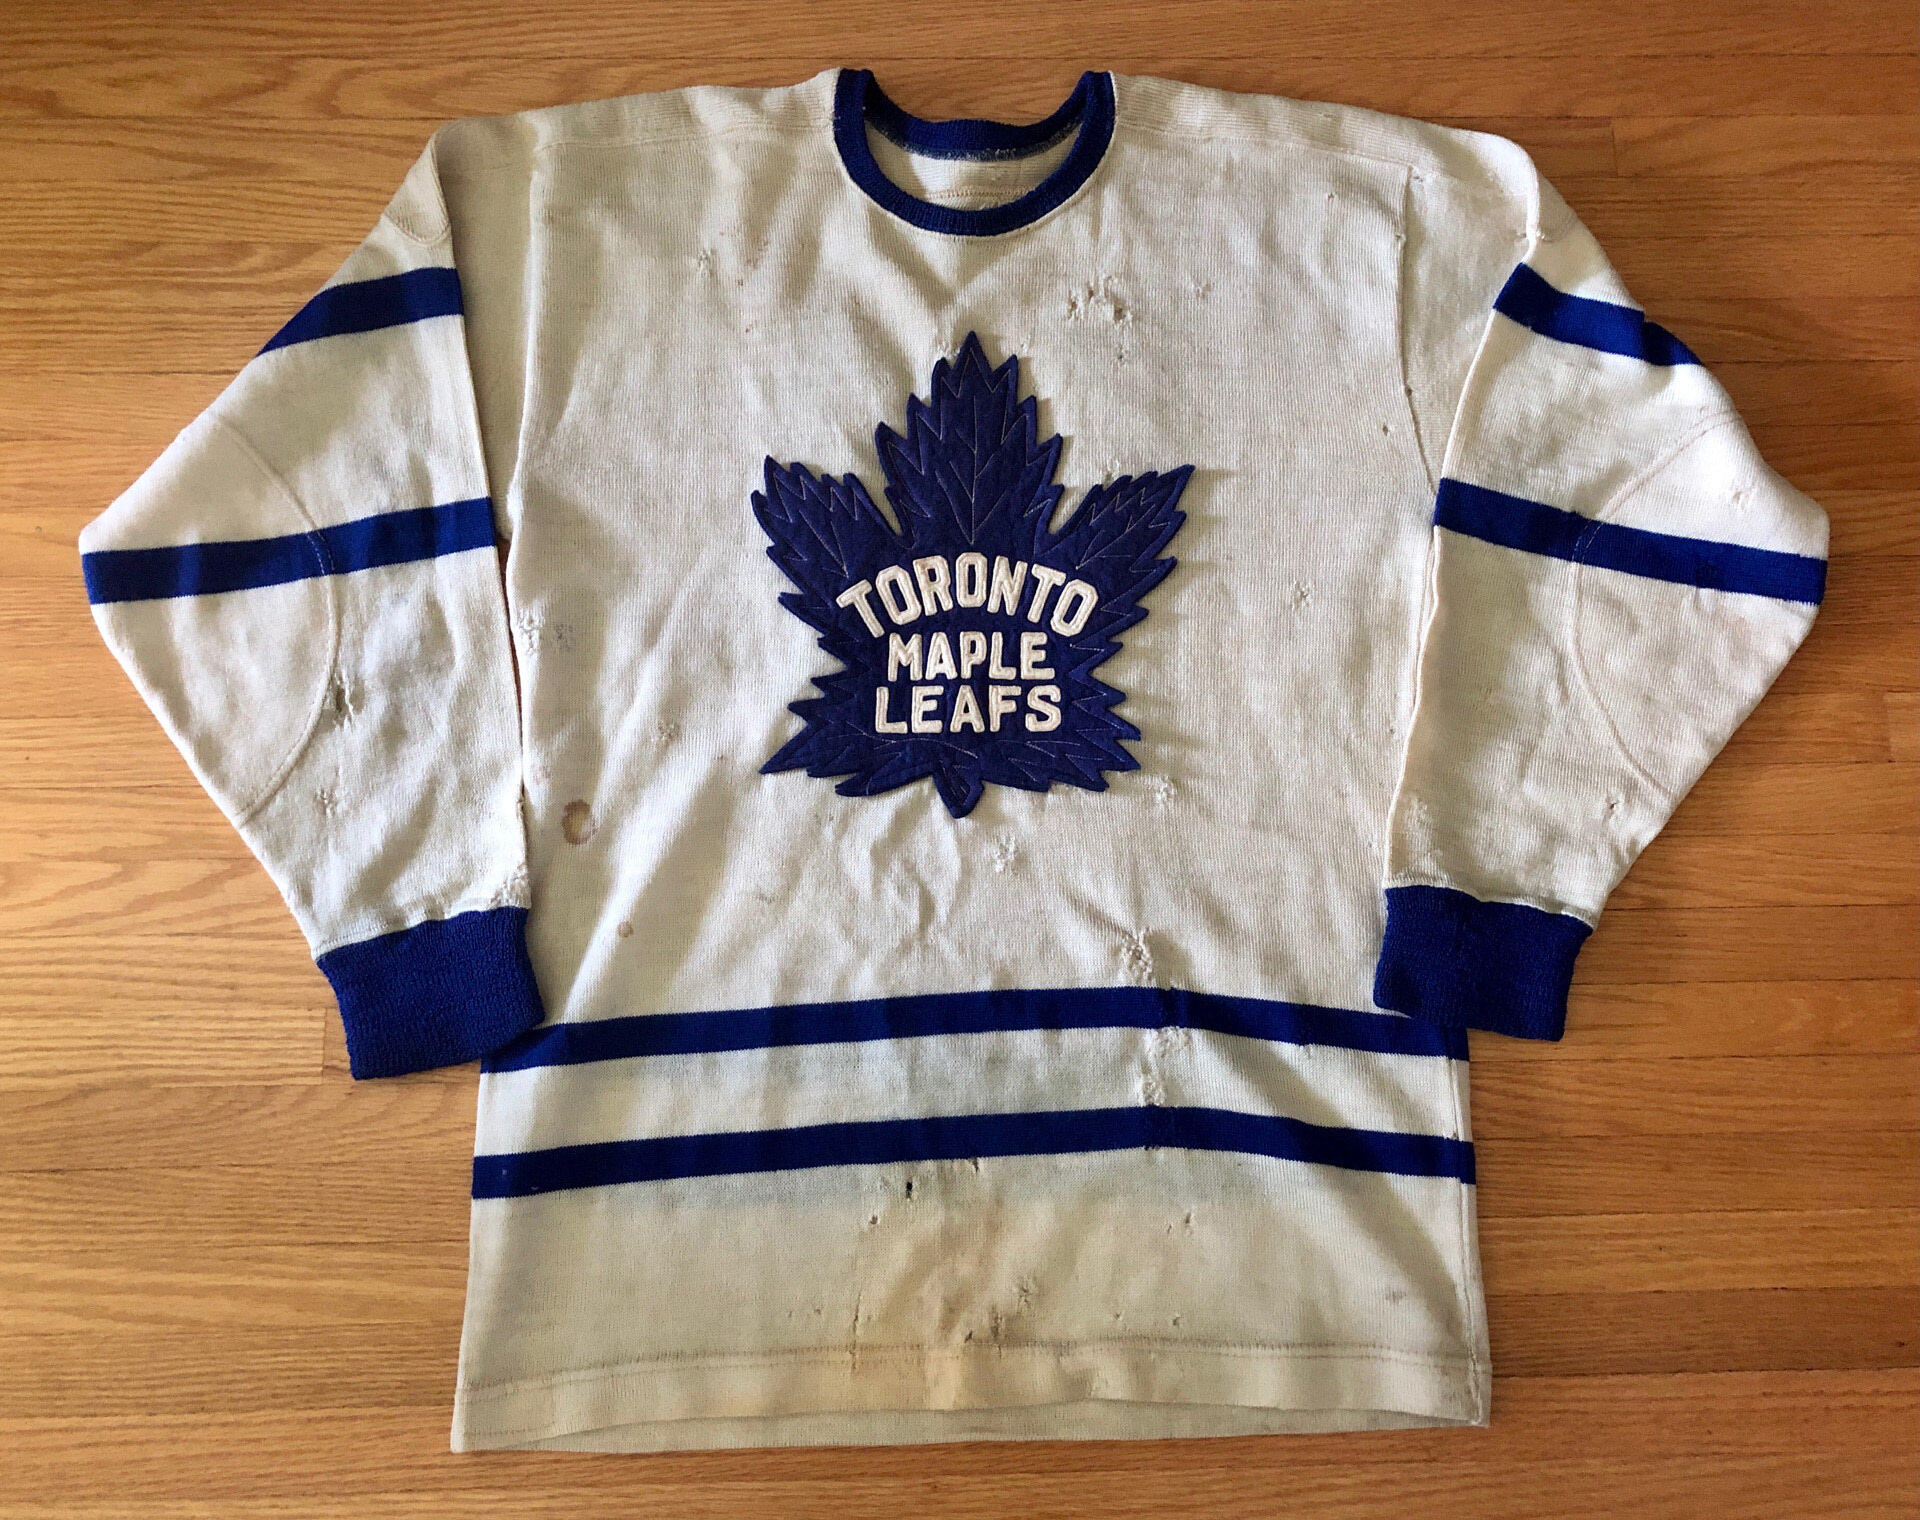 Toronto Maple Leafs Gear, Maple Leafs Jerseys, Toronto Maple Leafs